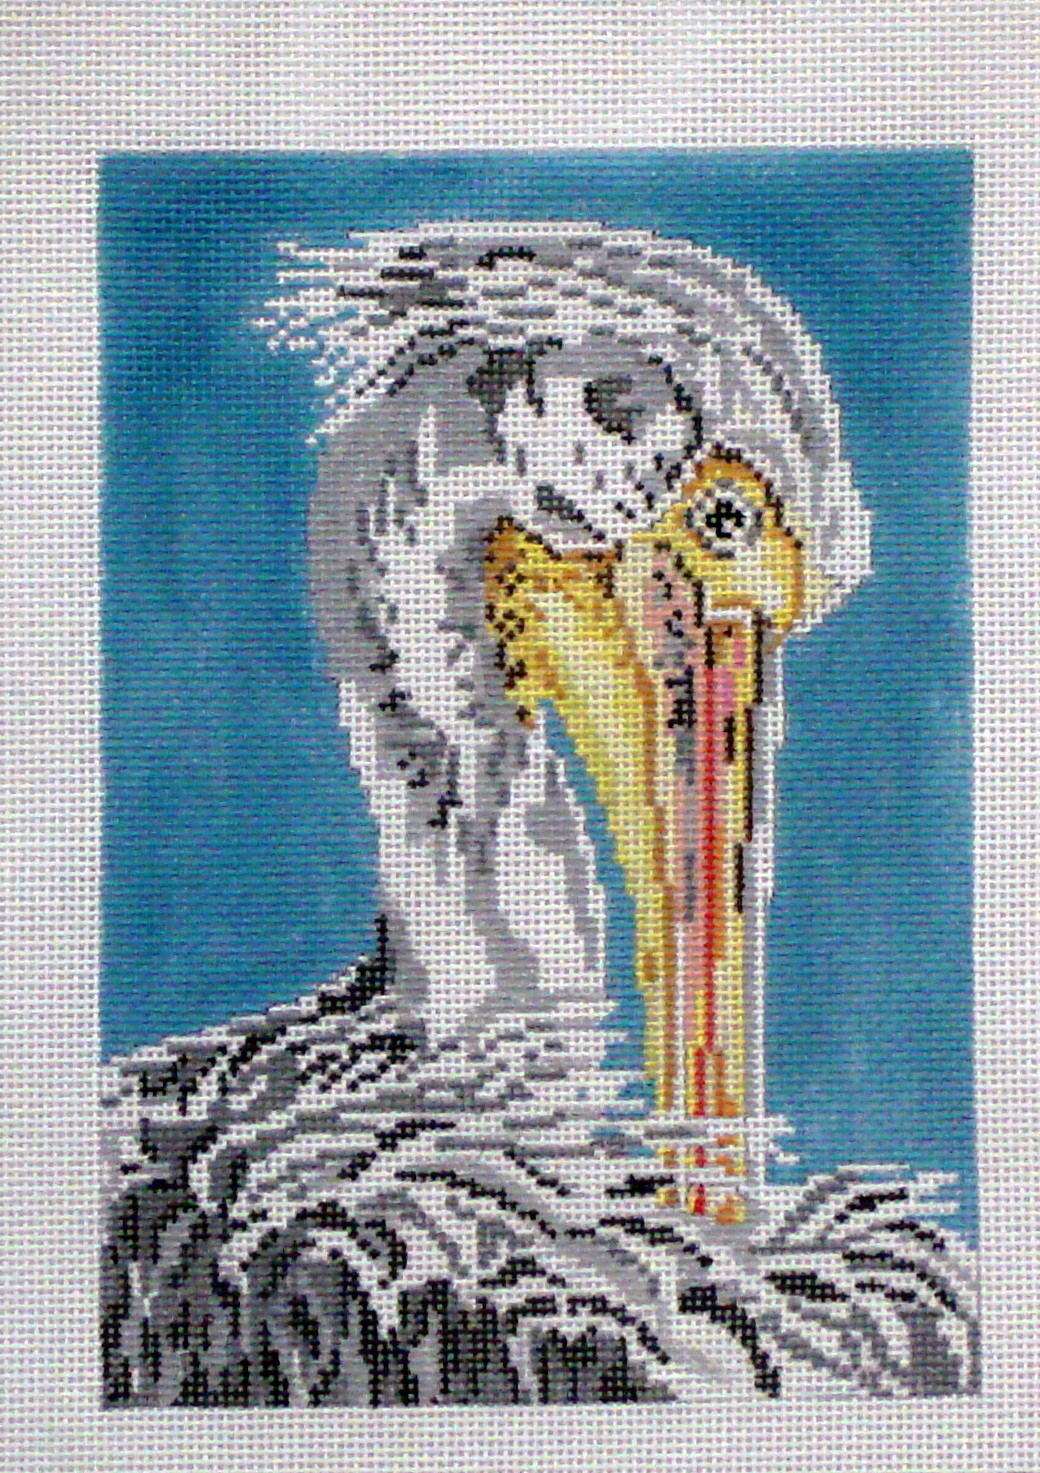 White Pelican (Handpainted by Needle Crossings)